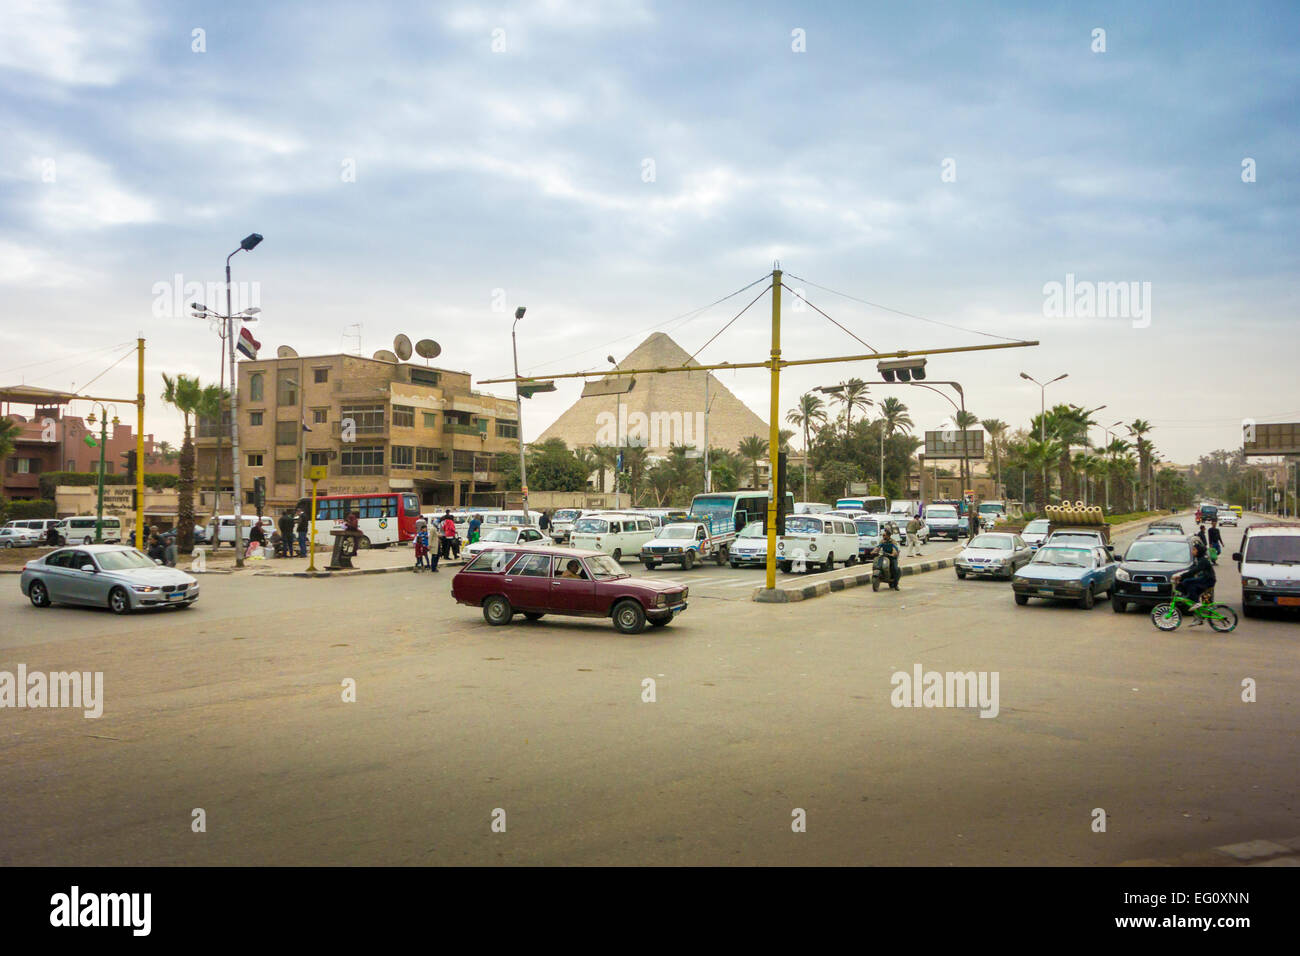 Il Cairo, Egitto, Gennaio 2015 - incrocio occupato con una piramide in background Foto Stock